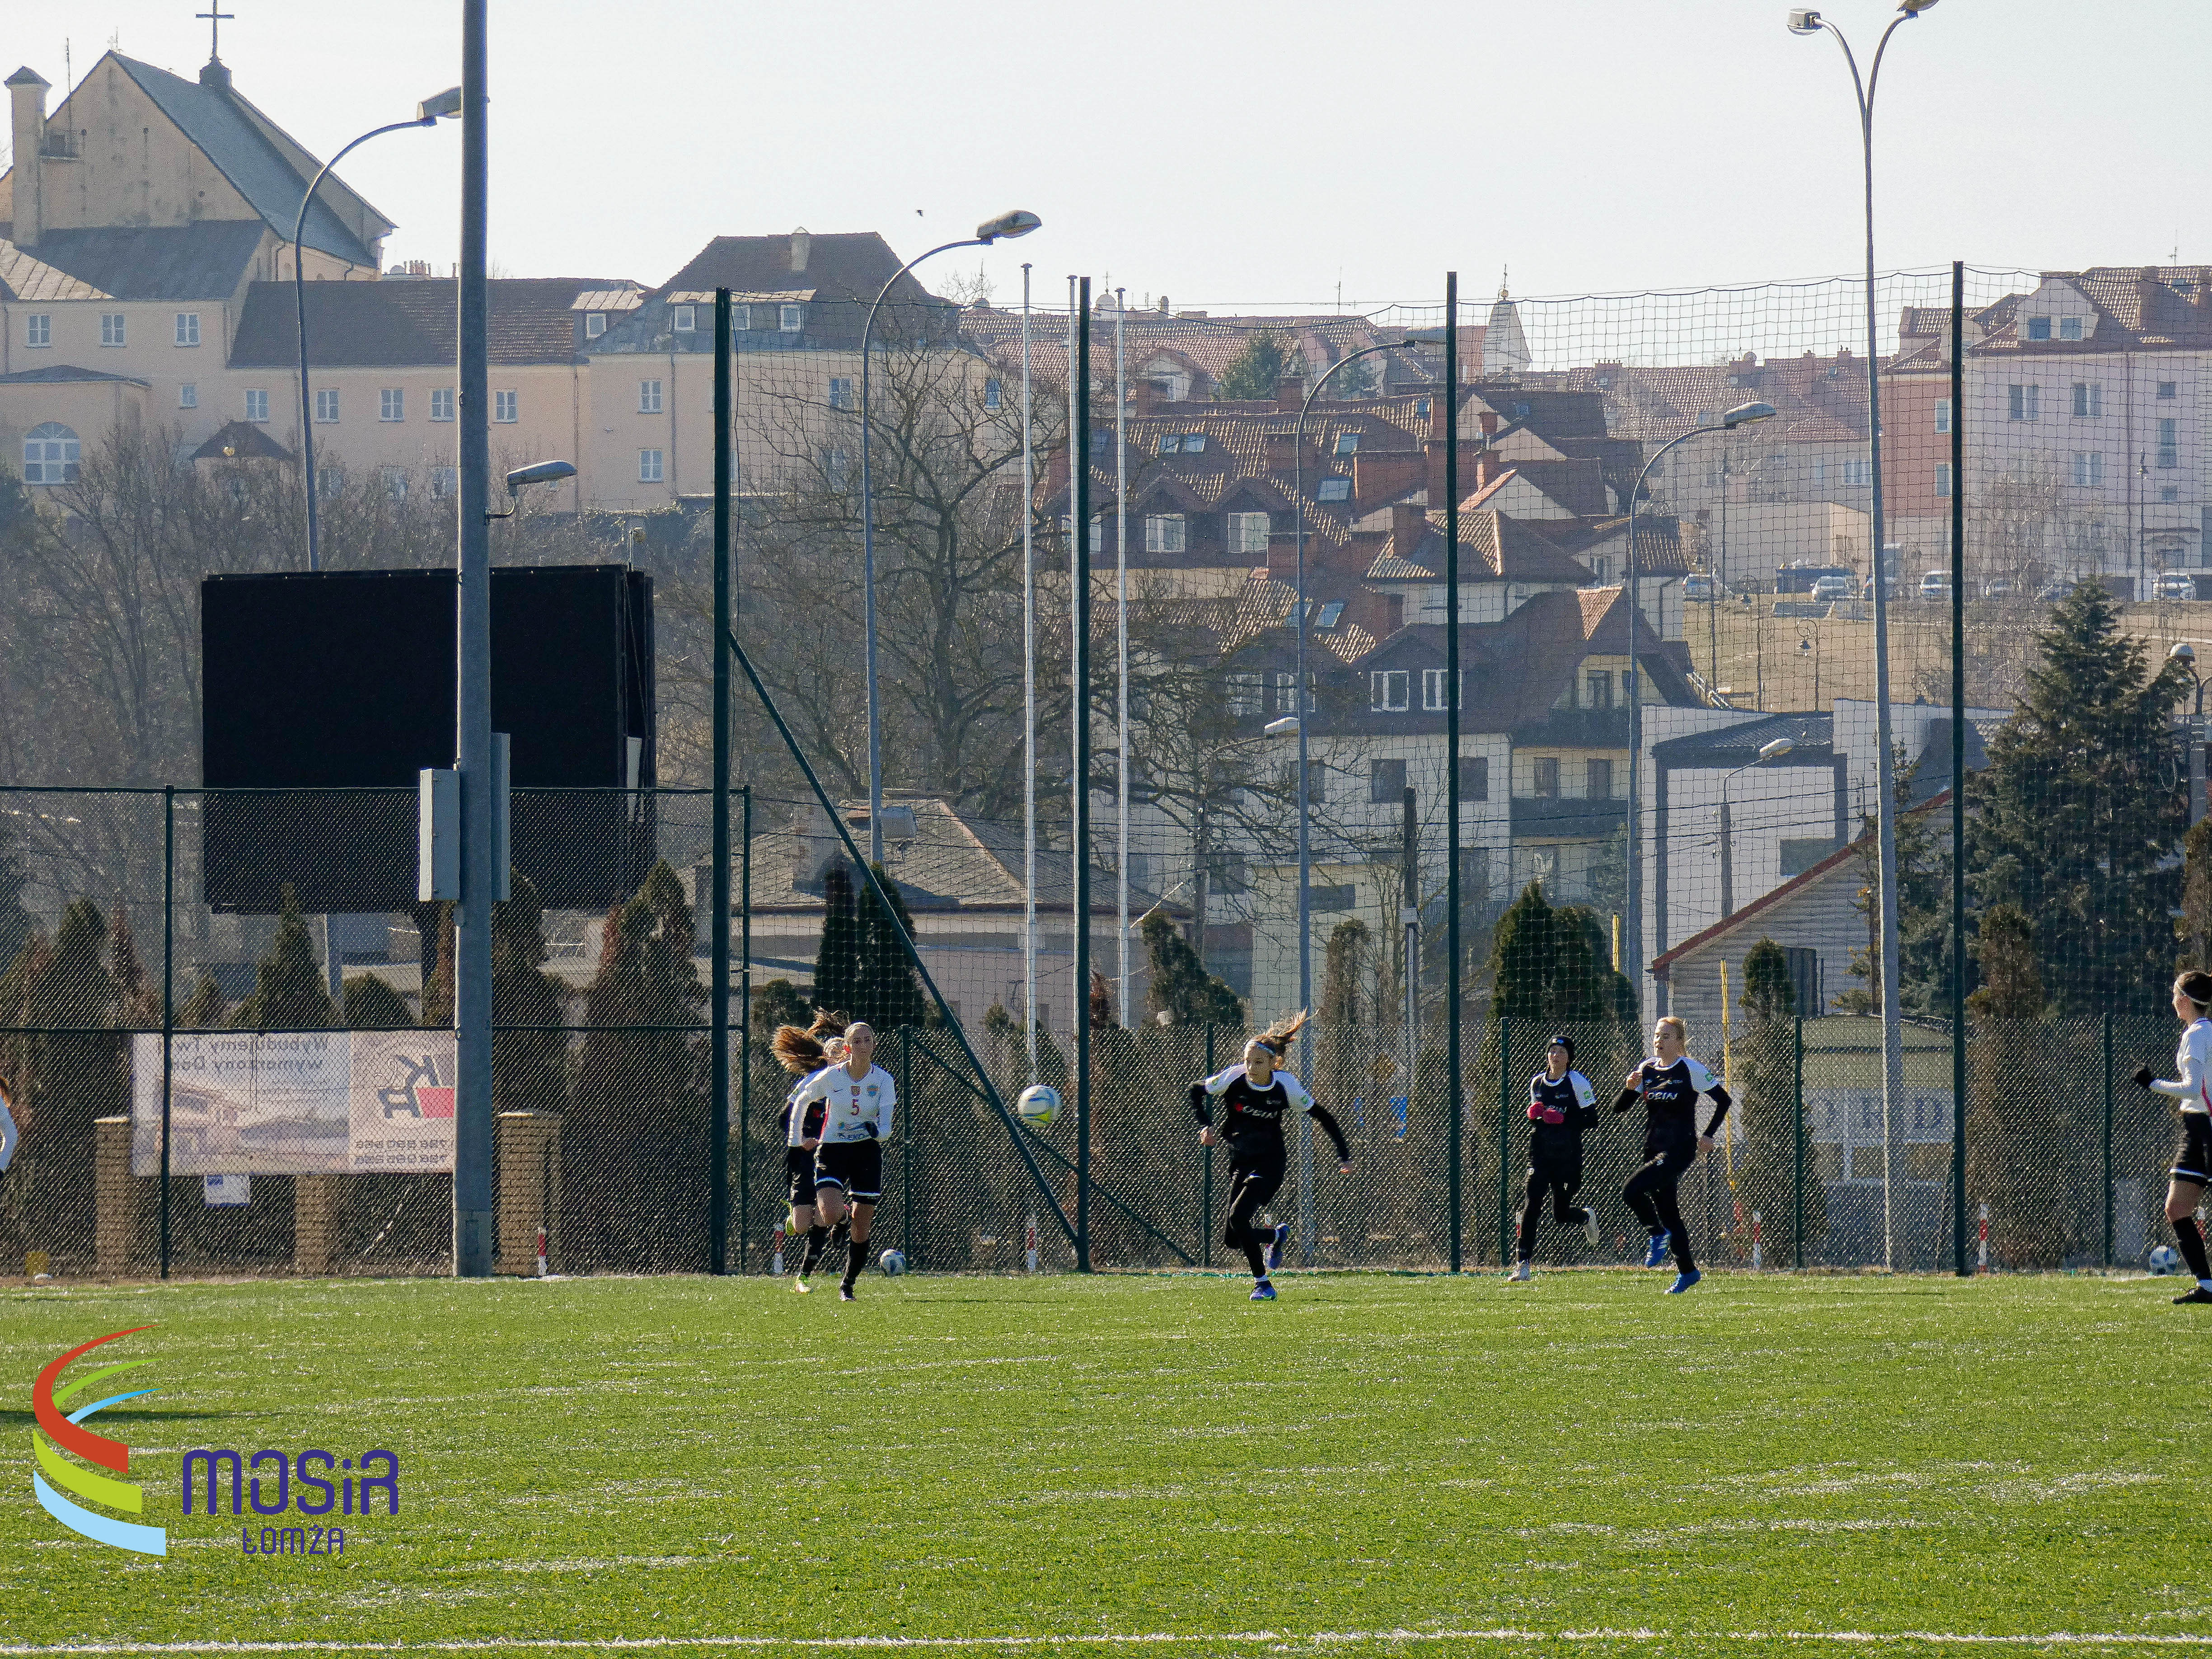 Boisko do piłki nożnej, na centralnej części fotografii dwie zawodniczki, jedna w czarnym, druga w białym stroju, w tle zabudowania miasta Łomża.